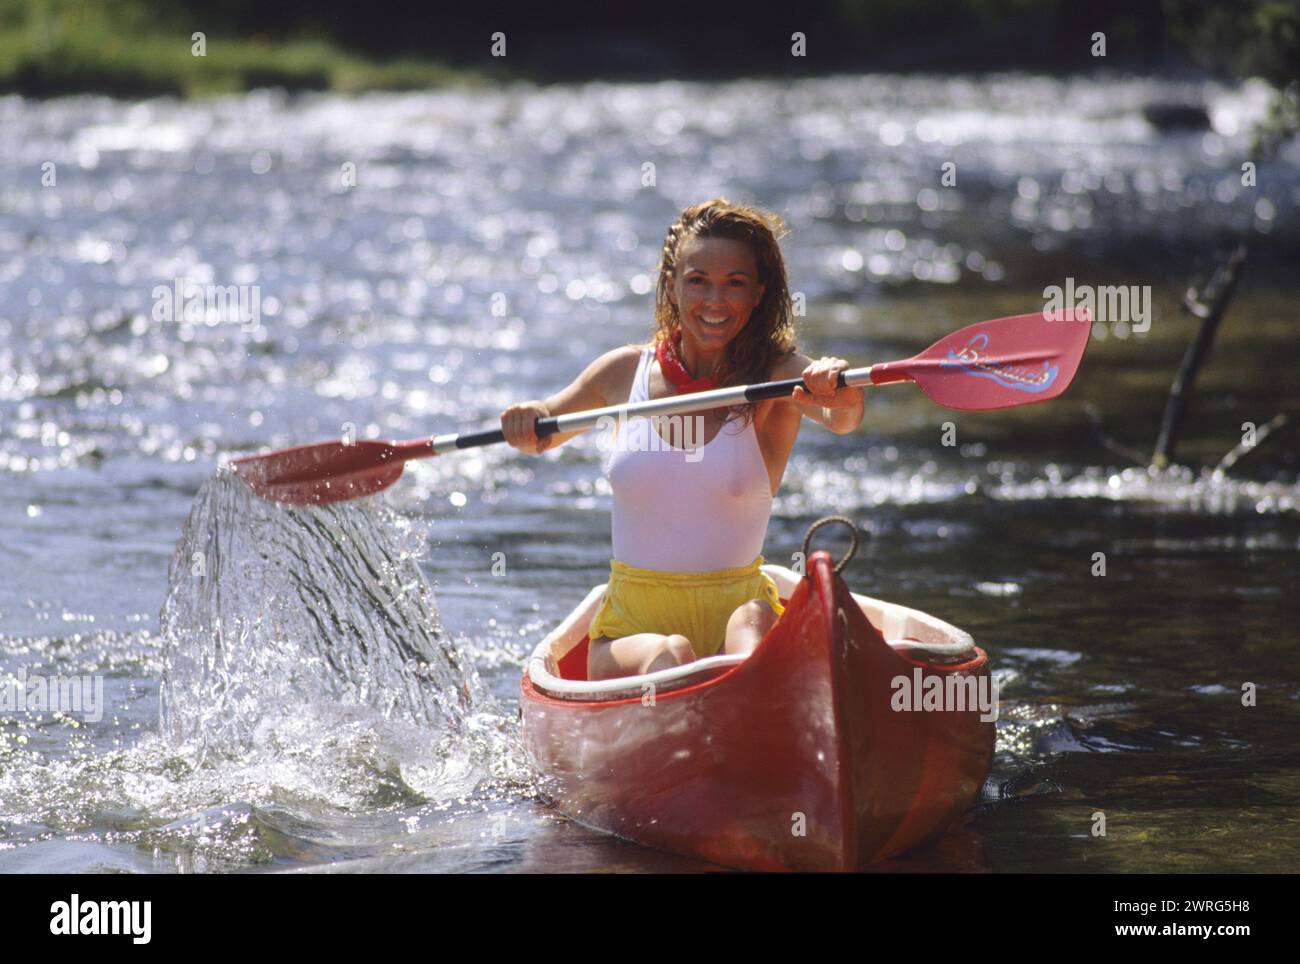 capelli biondi pretty woman fotocamera anteriore rossa dall'aspetto canoo felice faccia sorridente su un fogliame verde fiume sul retro Foto Stock